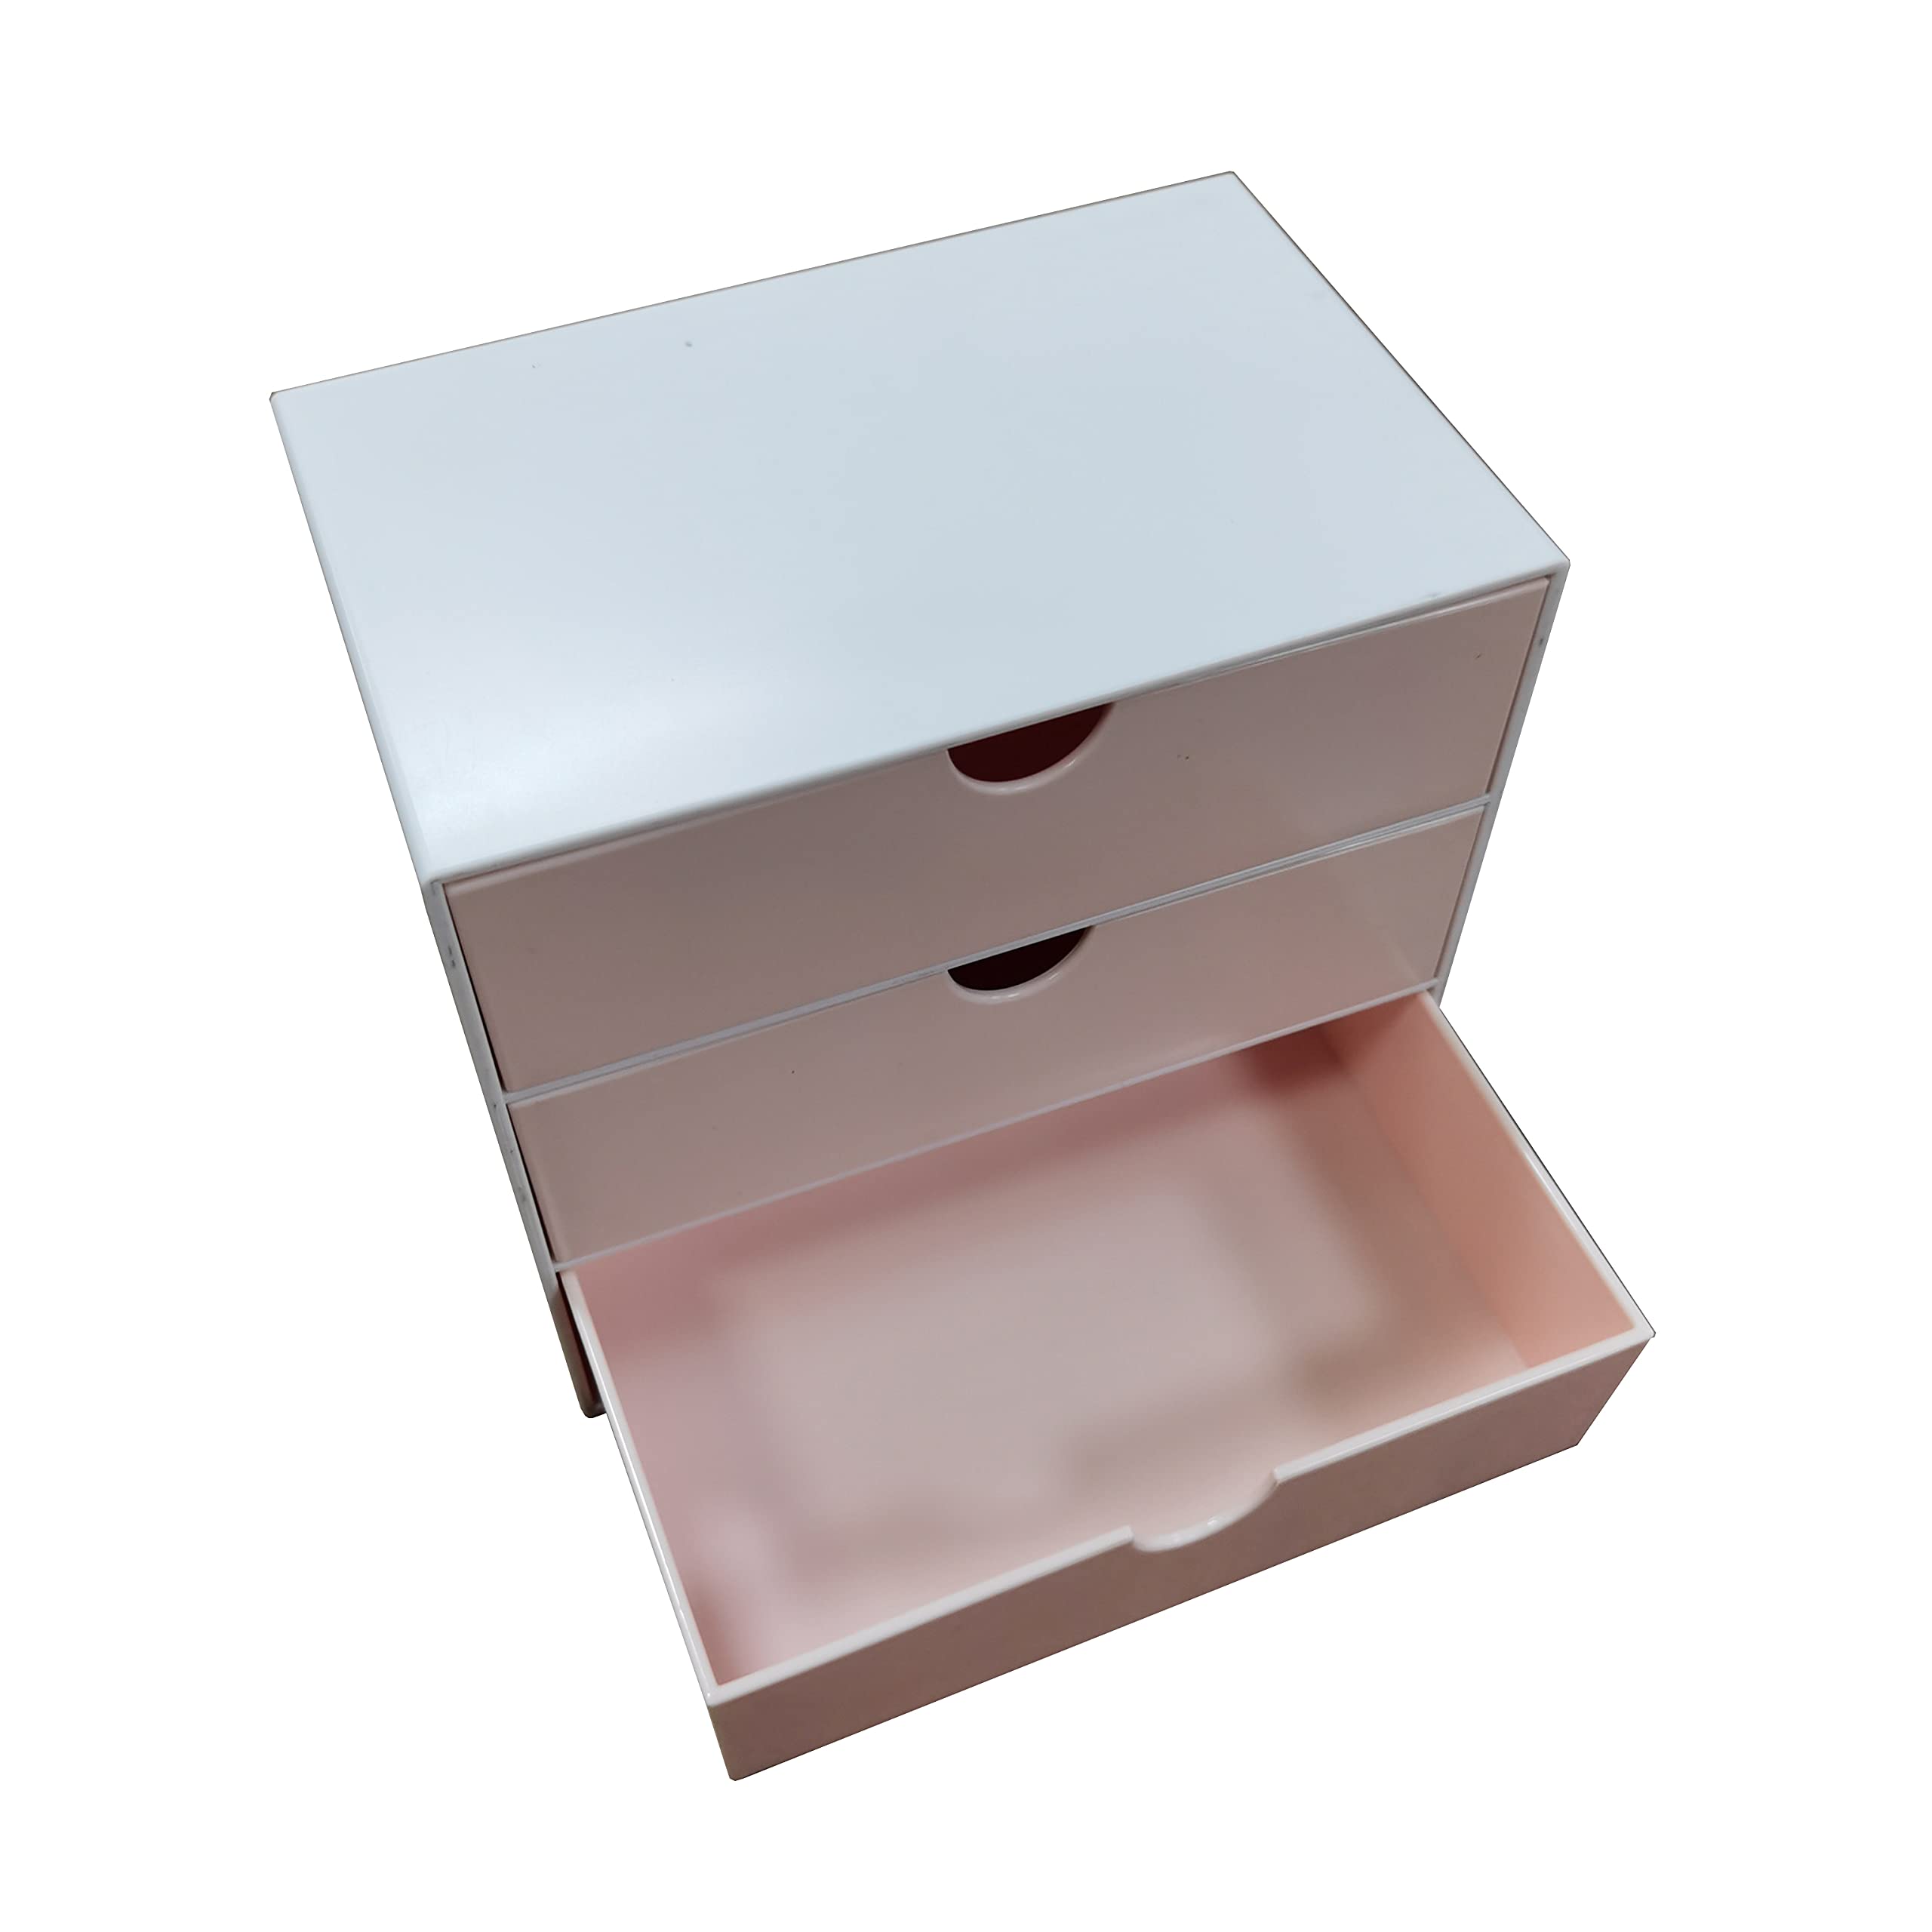  выдвижной ящик 3 уровень место хранения box мелкие вещи место хранения смешанные товары место хранения многоцелевой место хранения канцелярские товары косметика офисная работа сопутствующие товары ( розовый )